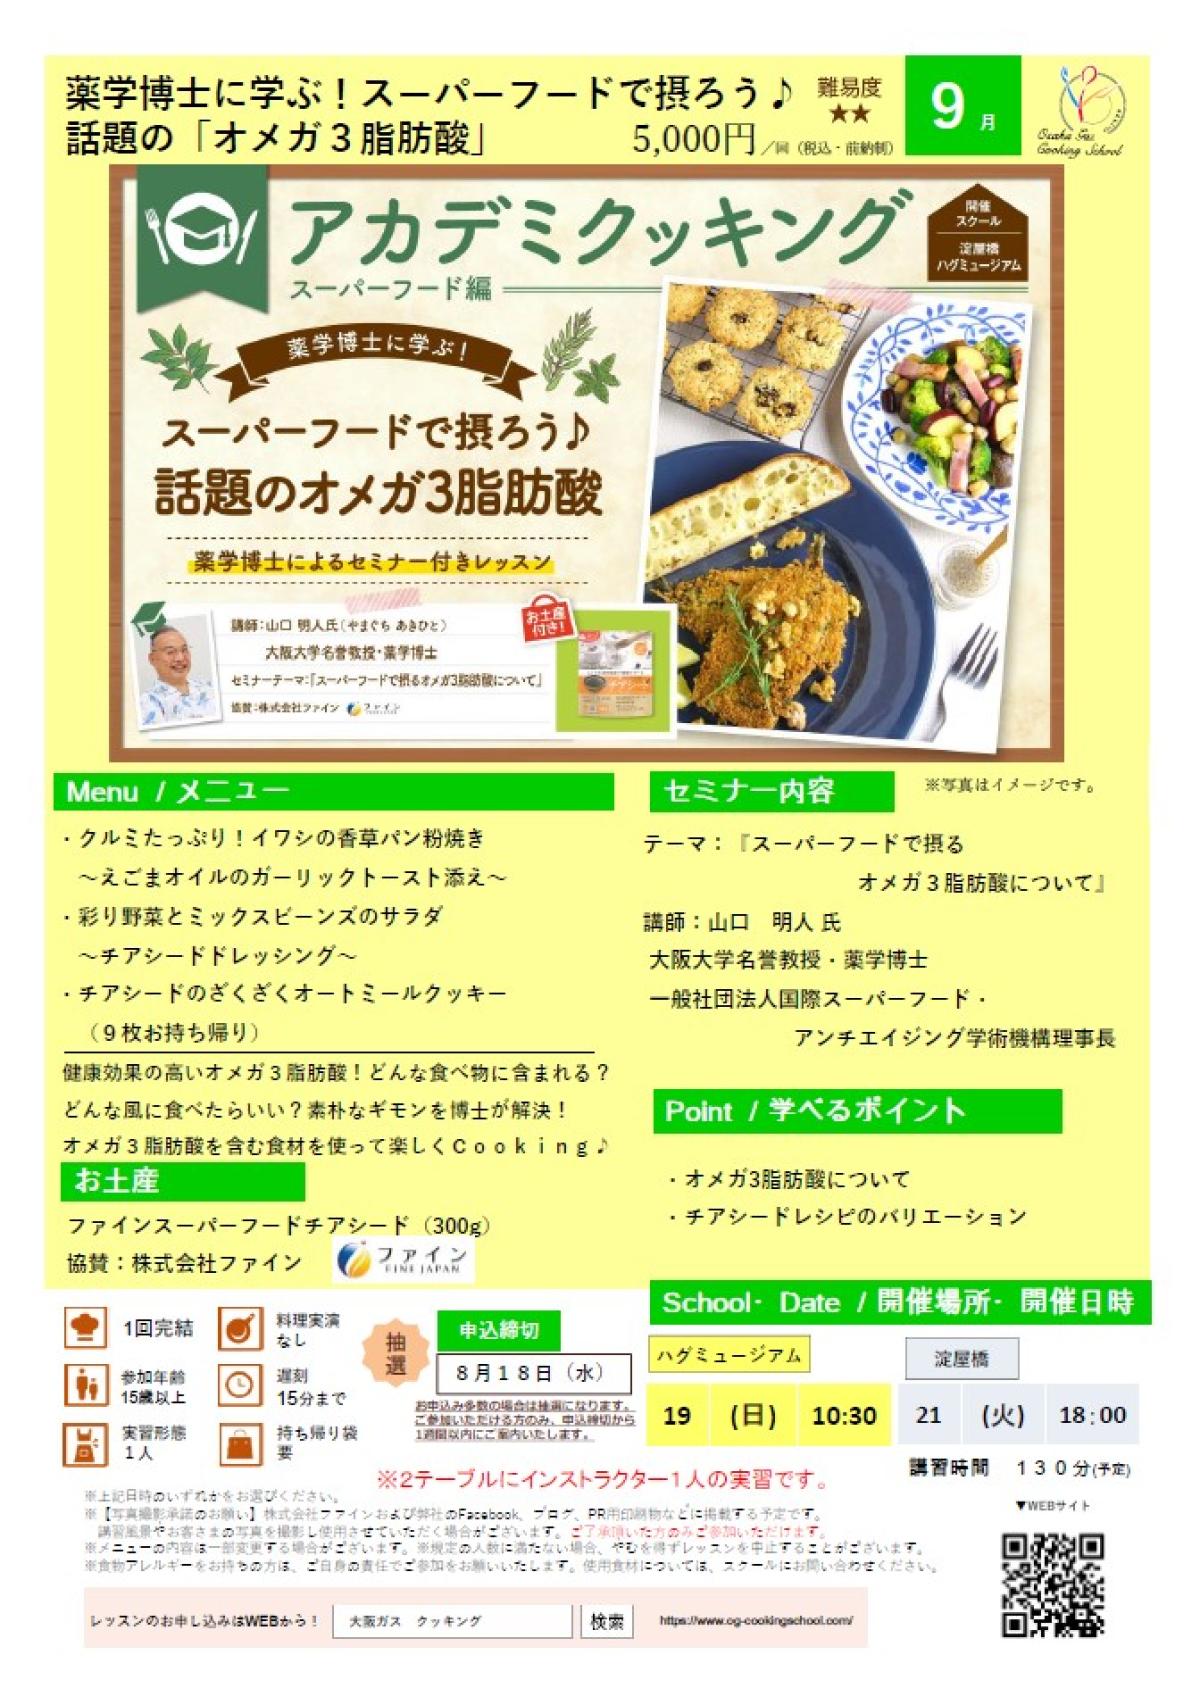 食の資格“栄養 コンシェルジュ”が導入された大阪ガス クッキングスクールが、9月度アカデミクッキング ～オメガ3脂肪酸～を開催します